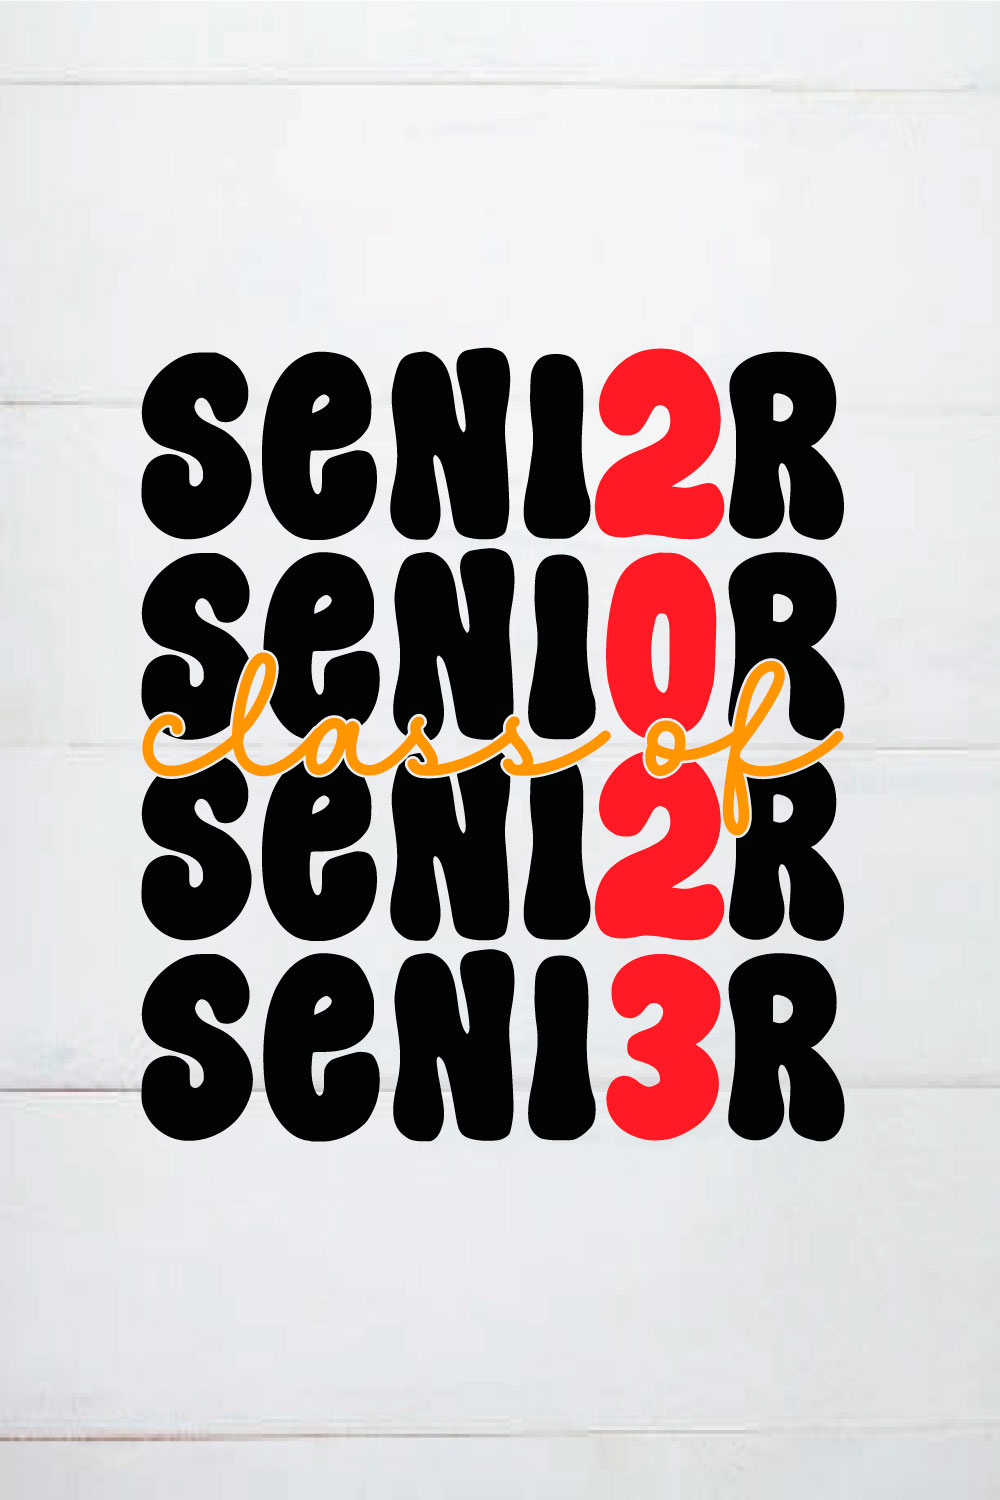 CLASS OF 2023 SENIOR SHIRT,GRADUATION SVG DESIGNS BUNDLE pinterest preview image.